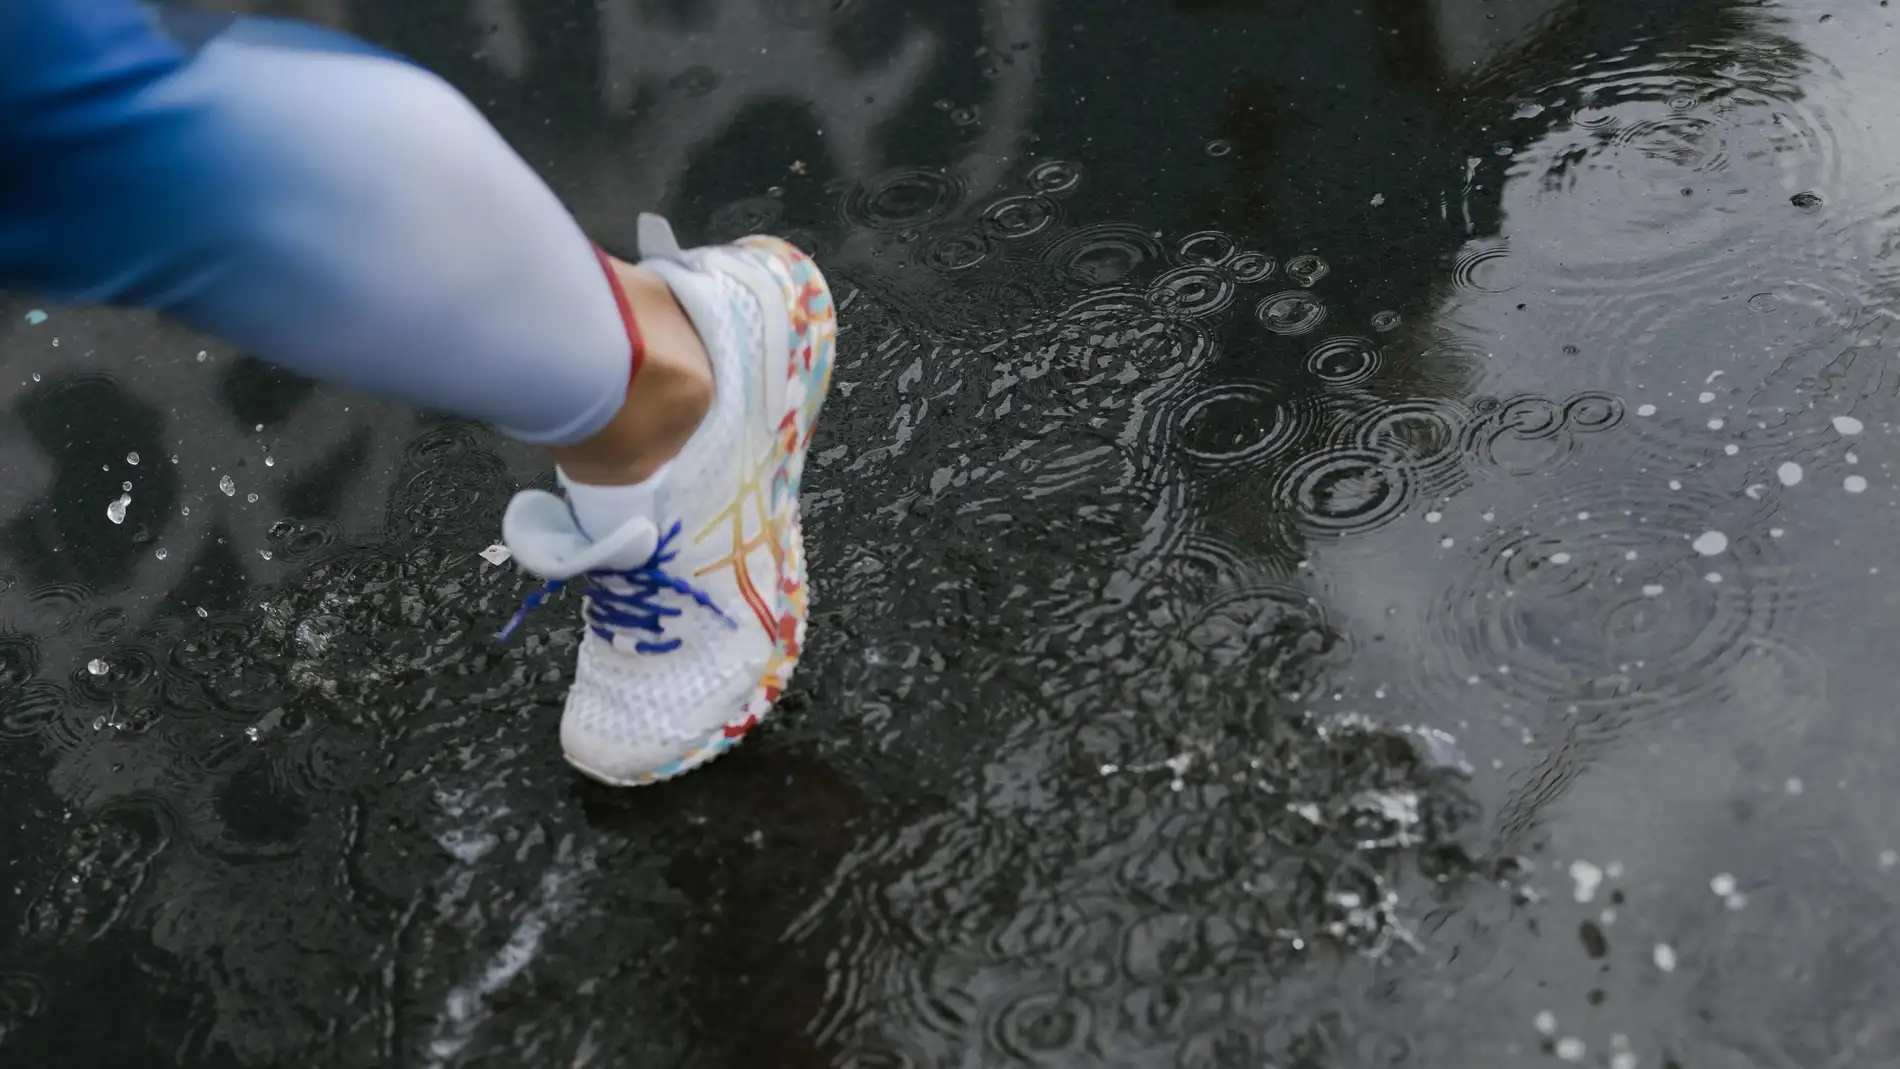 Una persona con calzado de deporte camina sobre el suelo mojado.